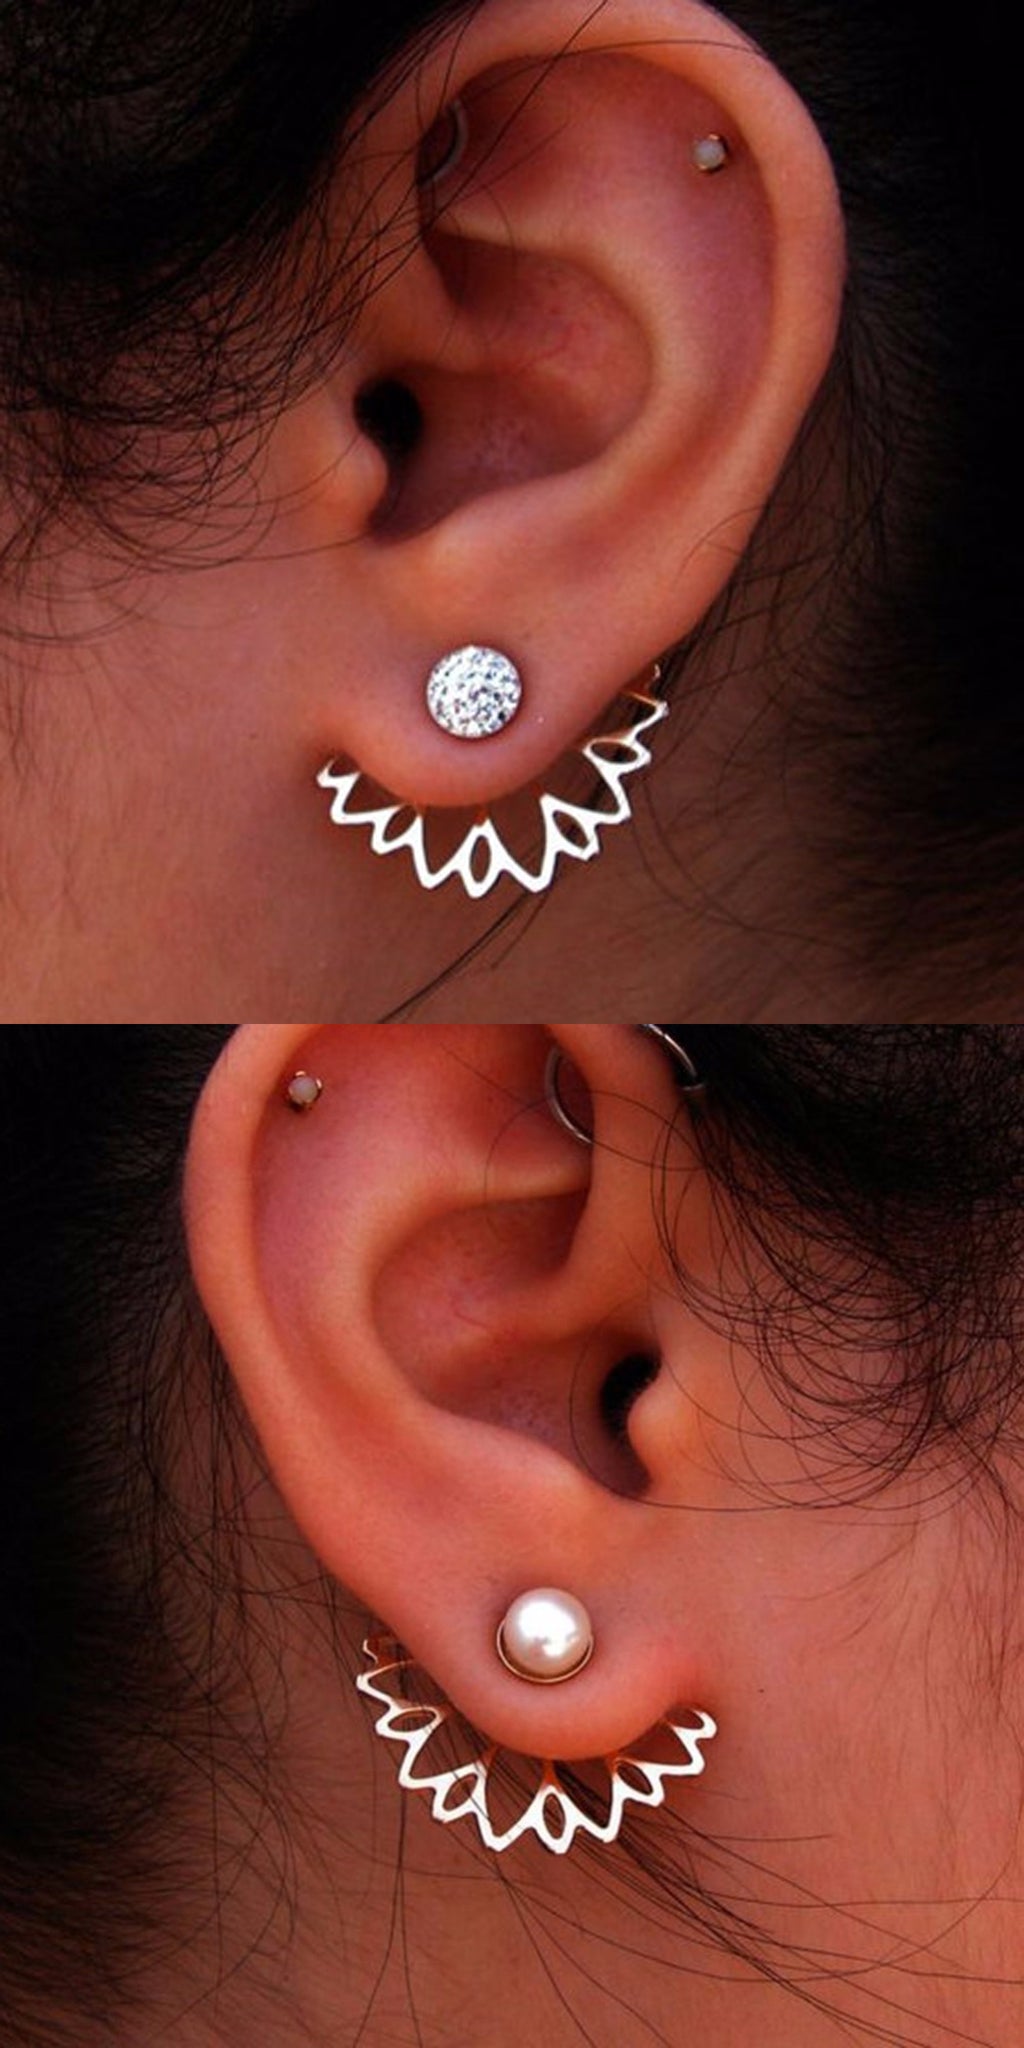 Pretty Ear Piercing Ideas at MyBodiArt.com - Crystal Pearl Flower Ear Jacket Earring Jewelry 